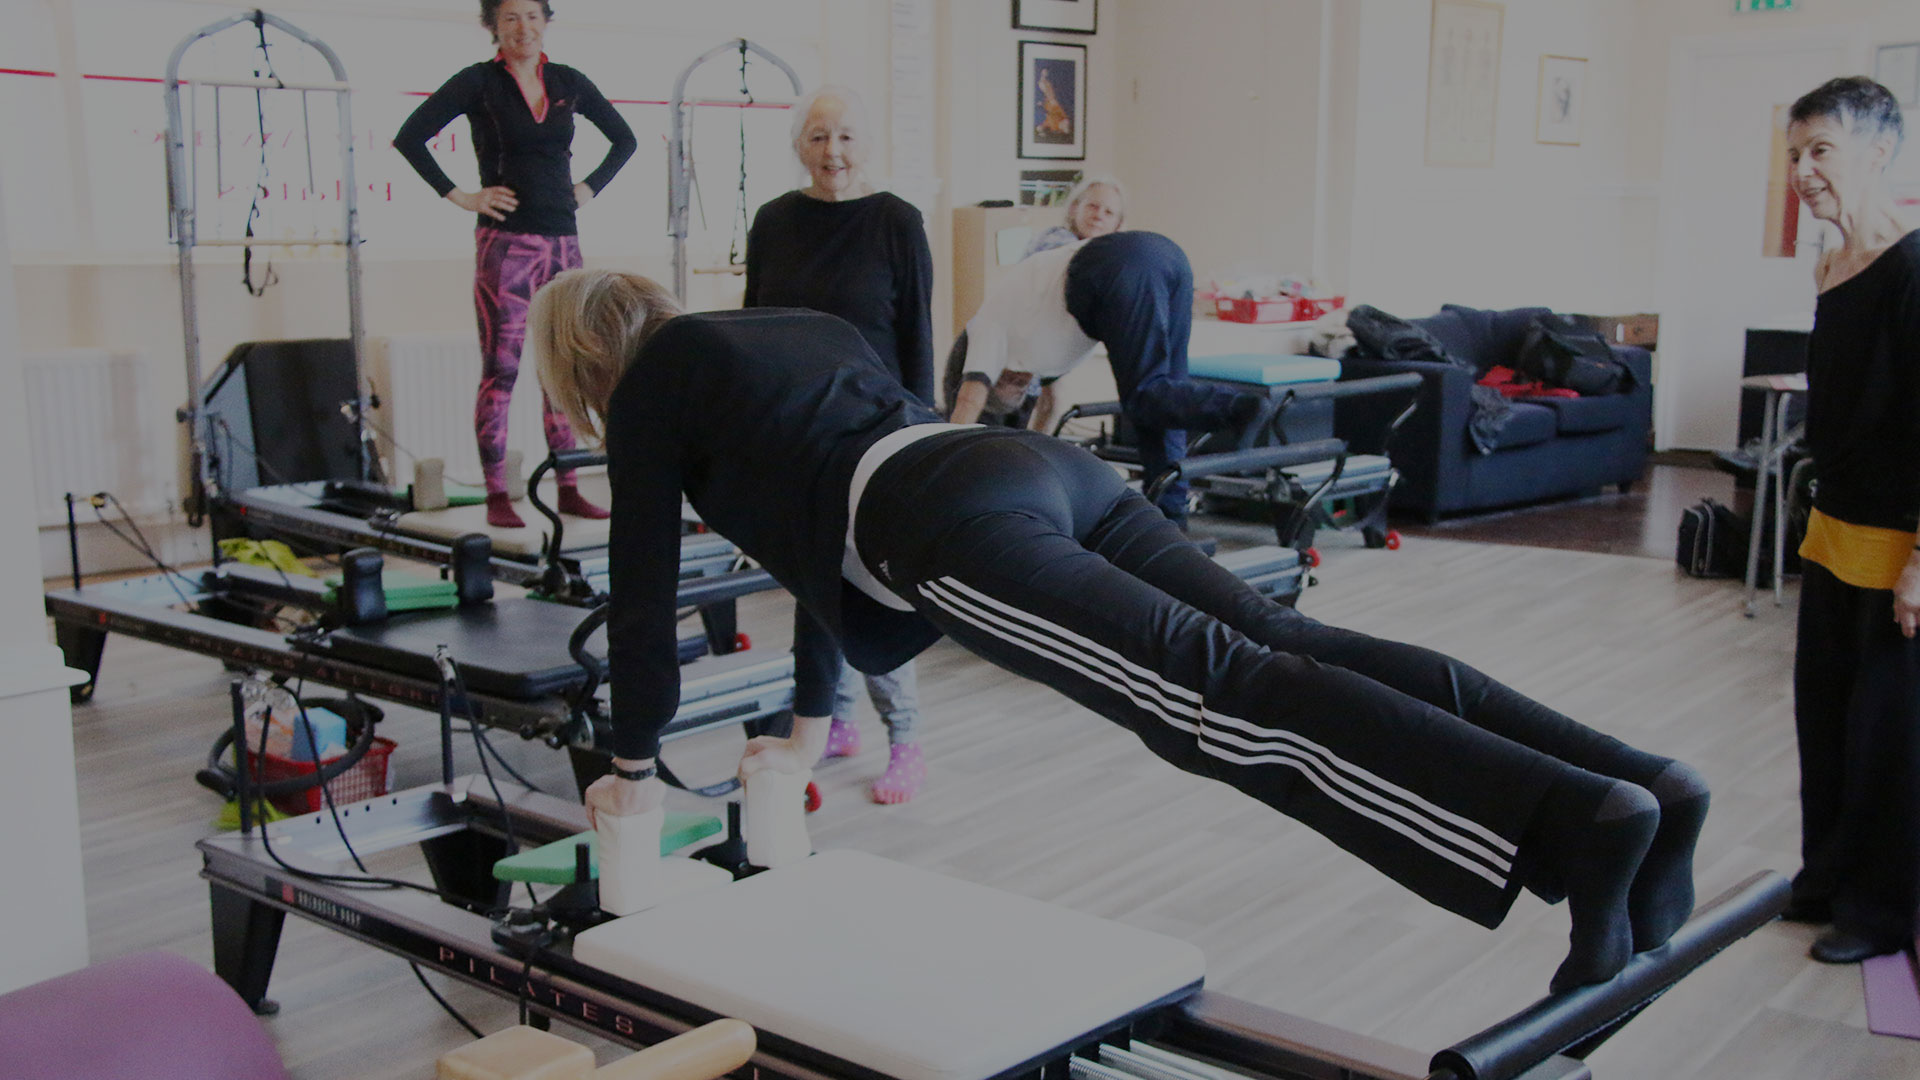 Body Aware Pilates Studio  Based in Ilfracombe, North Devon – Run